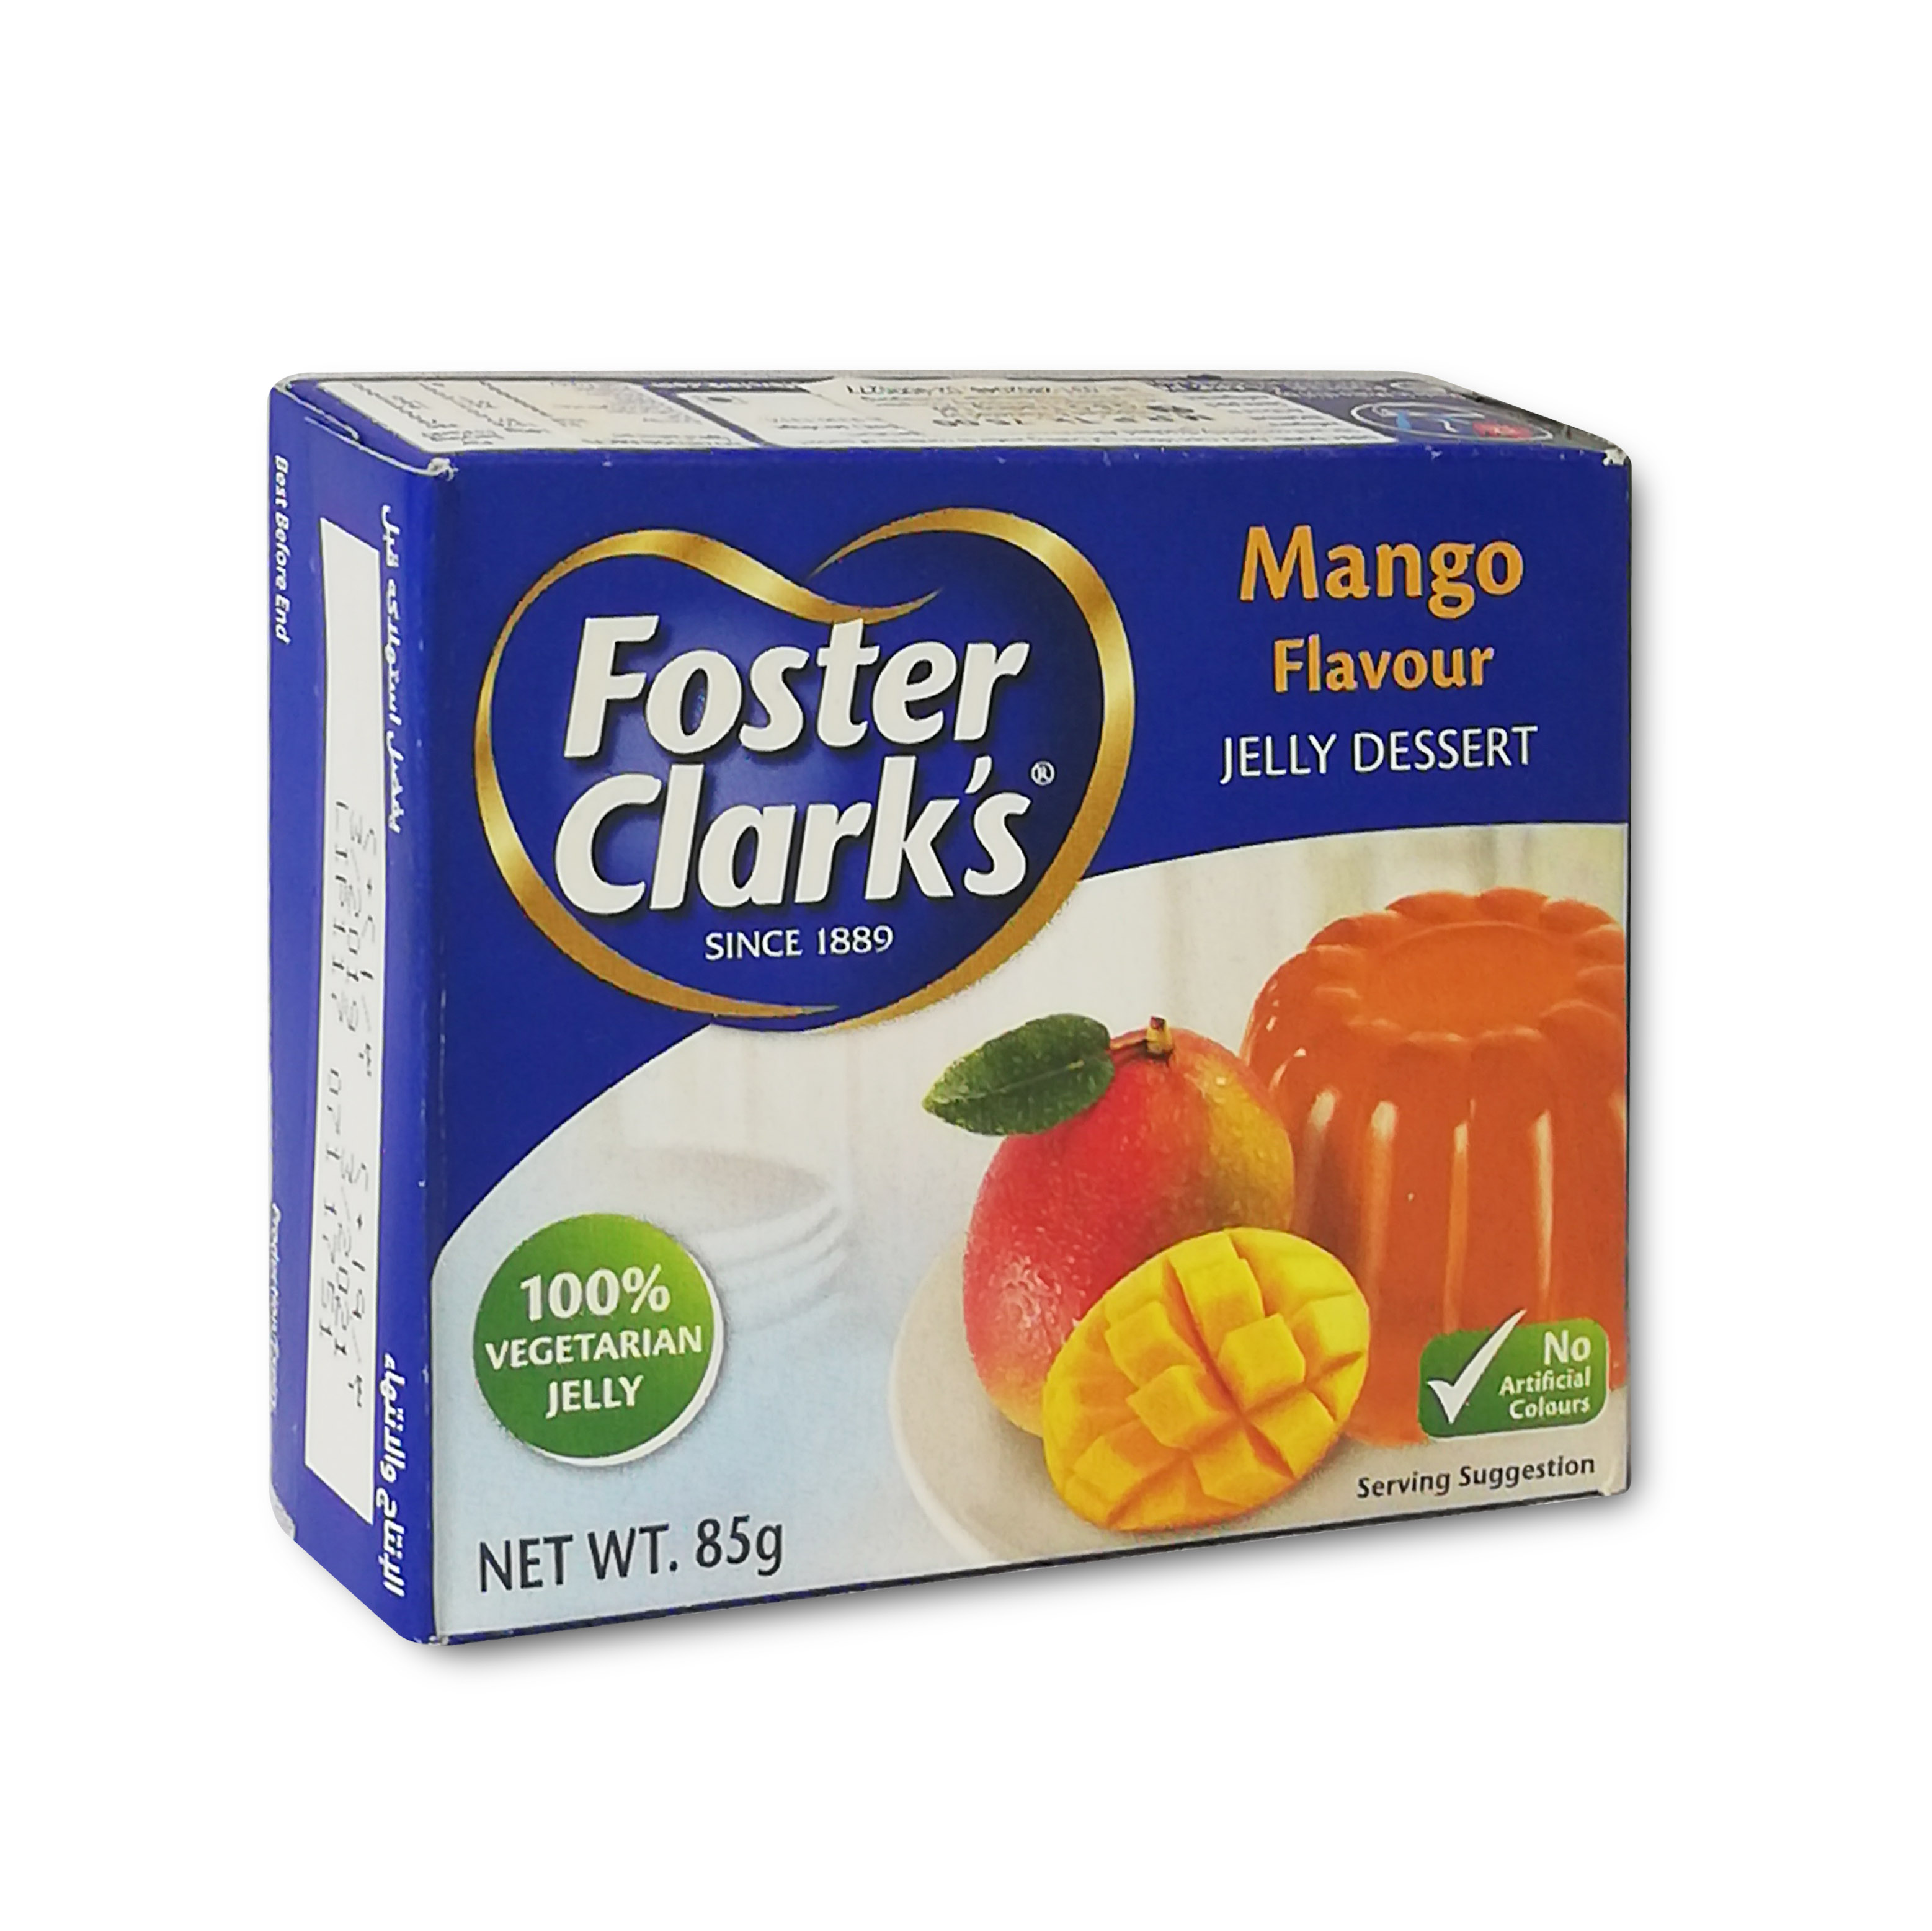 ফস্টার ক্লার্কস ফ্লেভার ম্যাংগো জেলি (Foster Clarks flavour mango jelly)